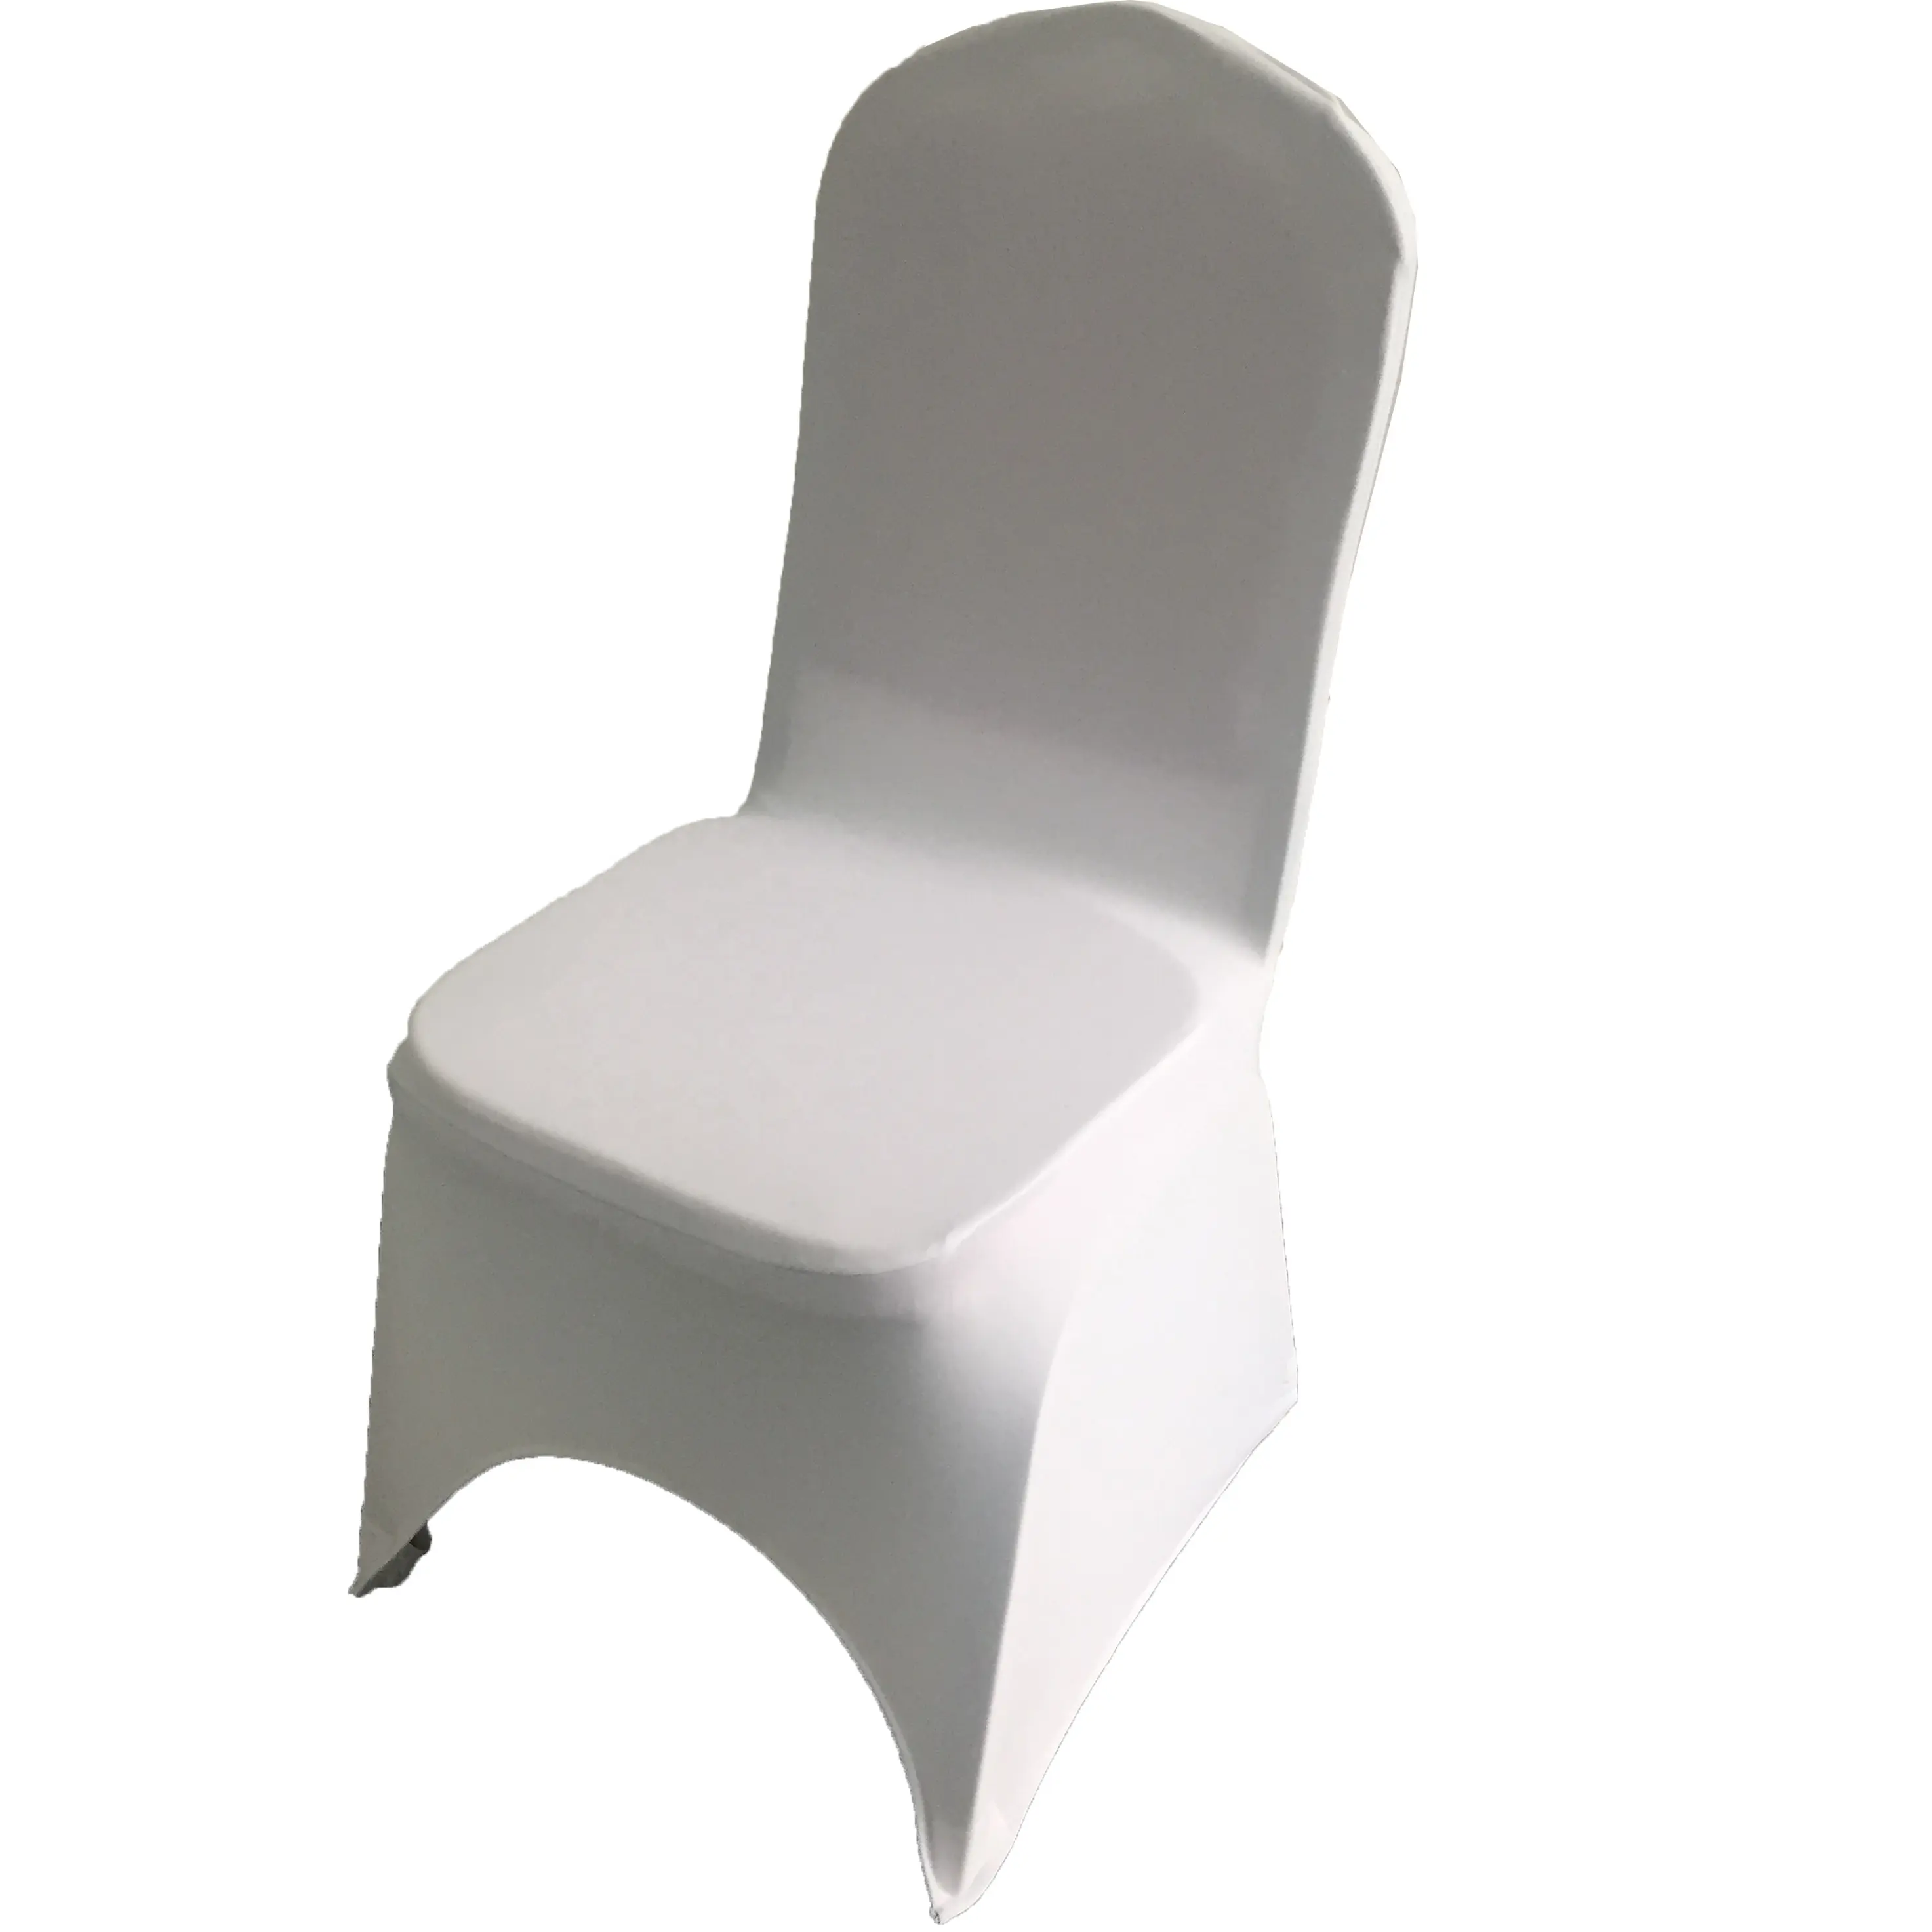 غطاء للكرسي أبيض أمامي قوس من البوليستر Spandex غطاء قابل للتمدد للكراسي مناسب لحفلات الزفاف الفنادق والمطاعم